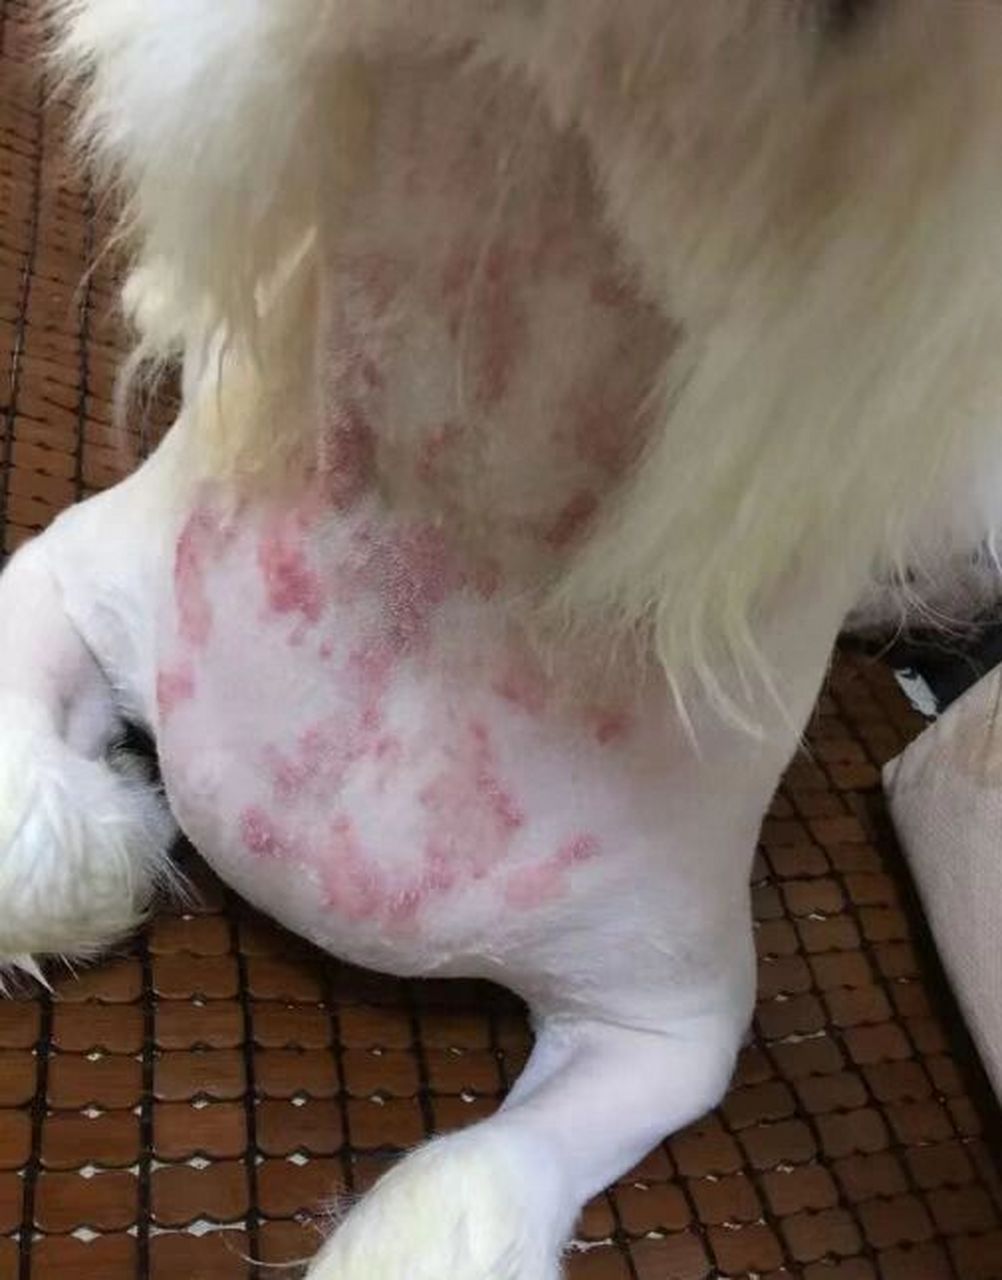 狗狗皮肤病症状图片图片